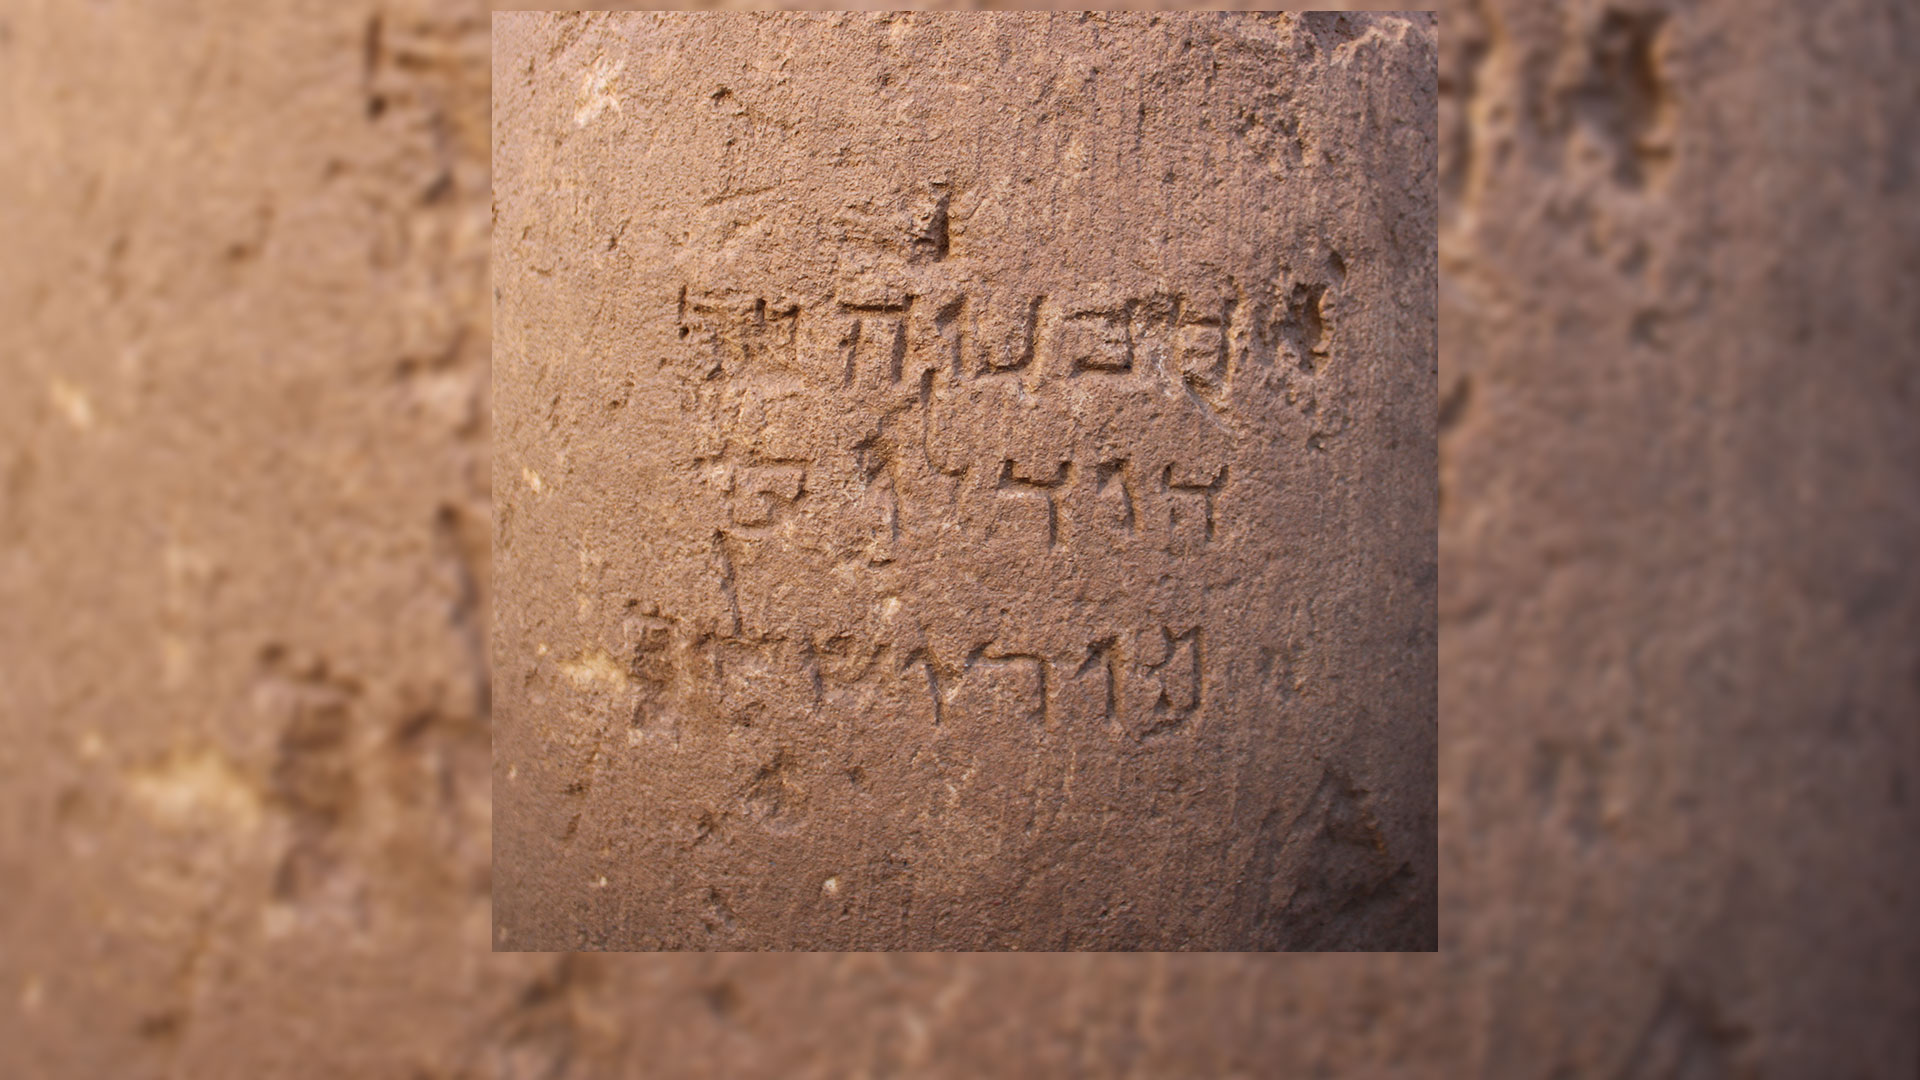 תקריב של הכתובת חוליית עמוד ועליה כתובת בארמית בנייני האומה, ירושלים, המאה ה־1 לפני הספירה, אבן גיר